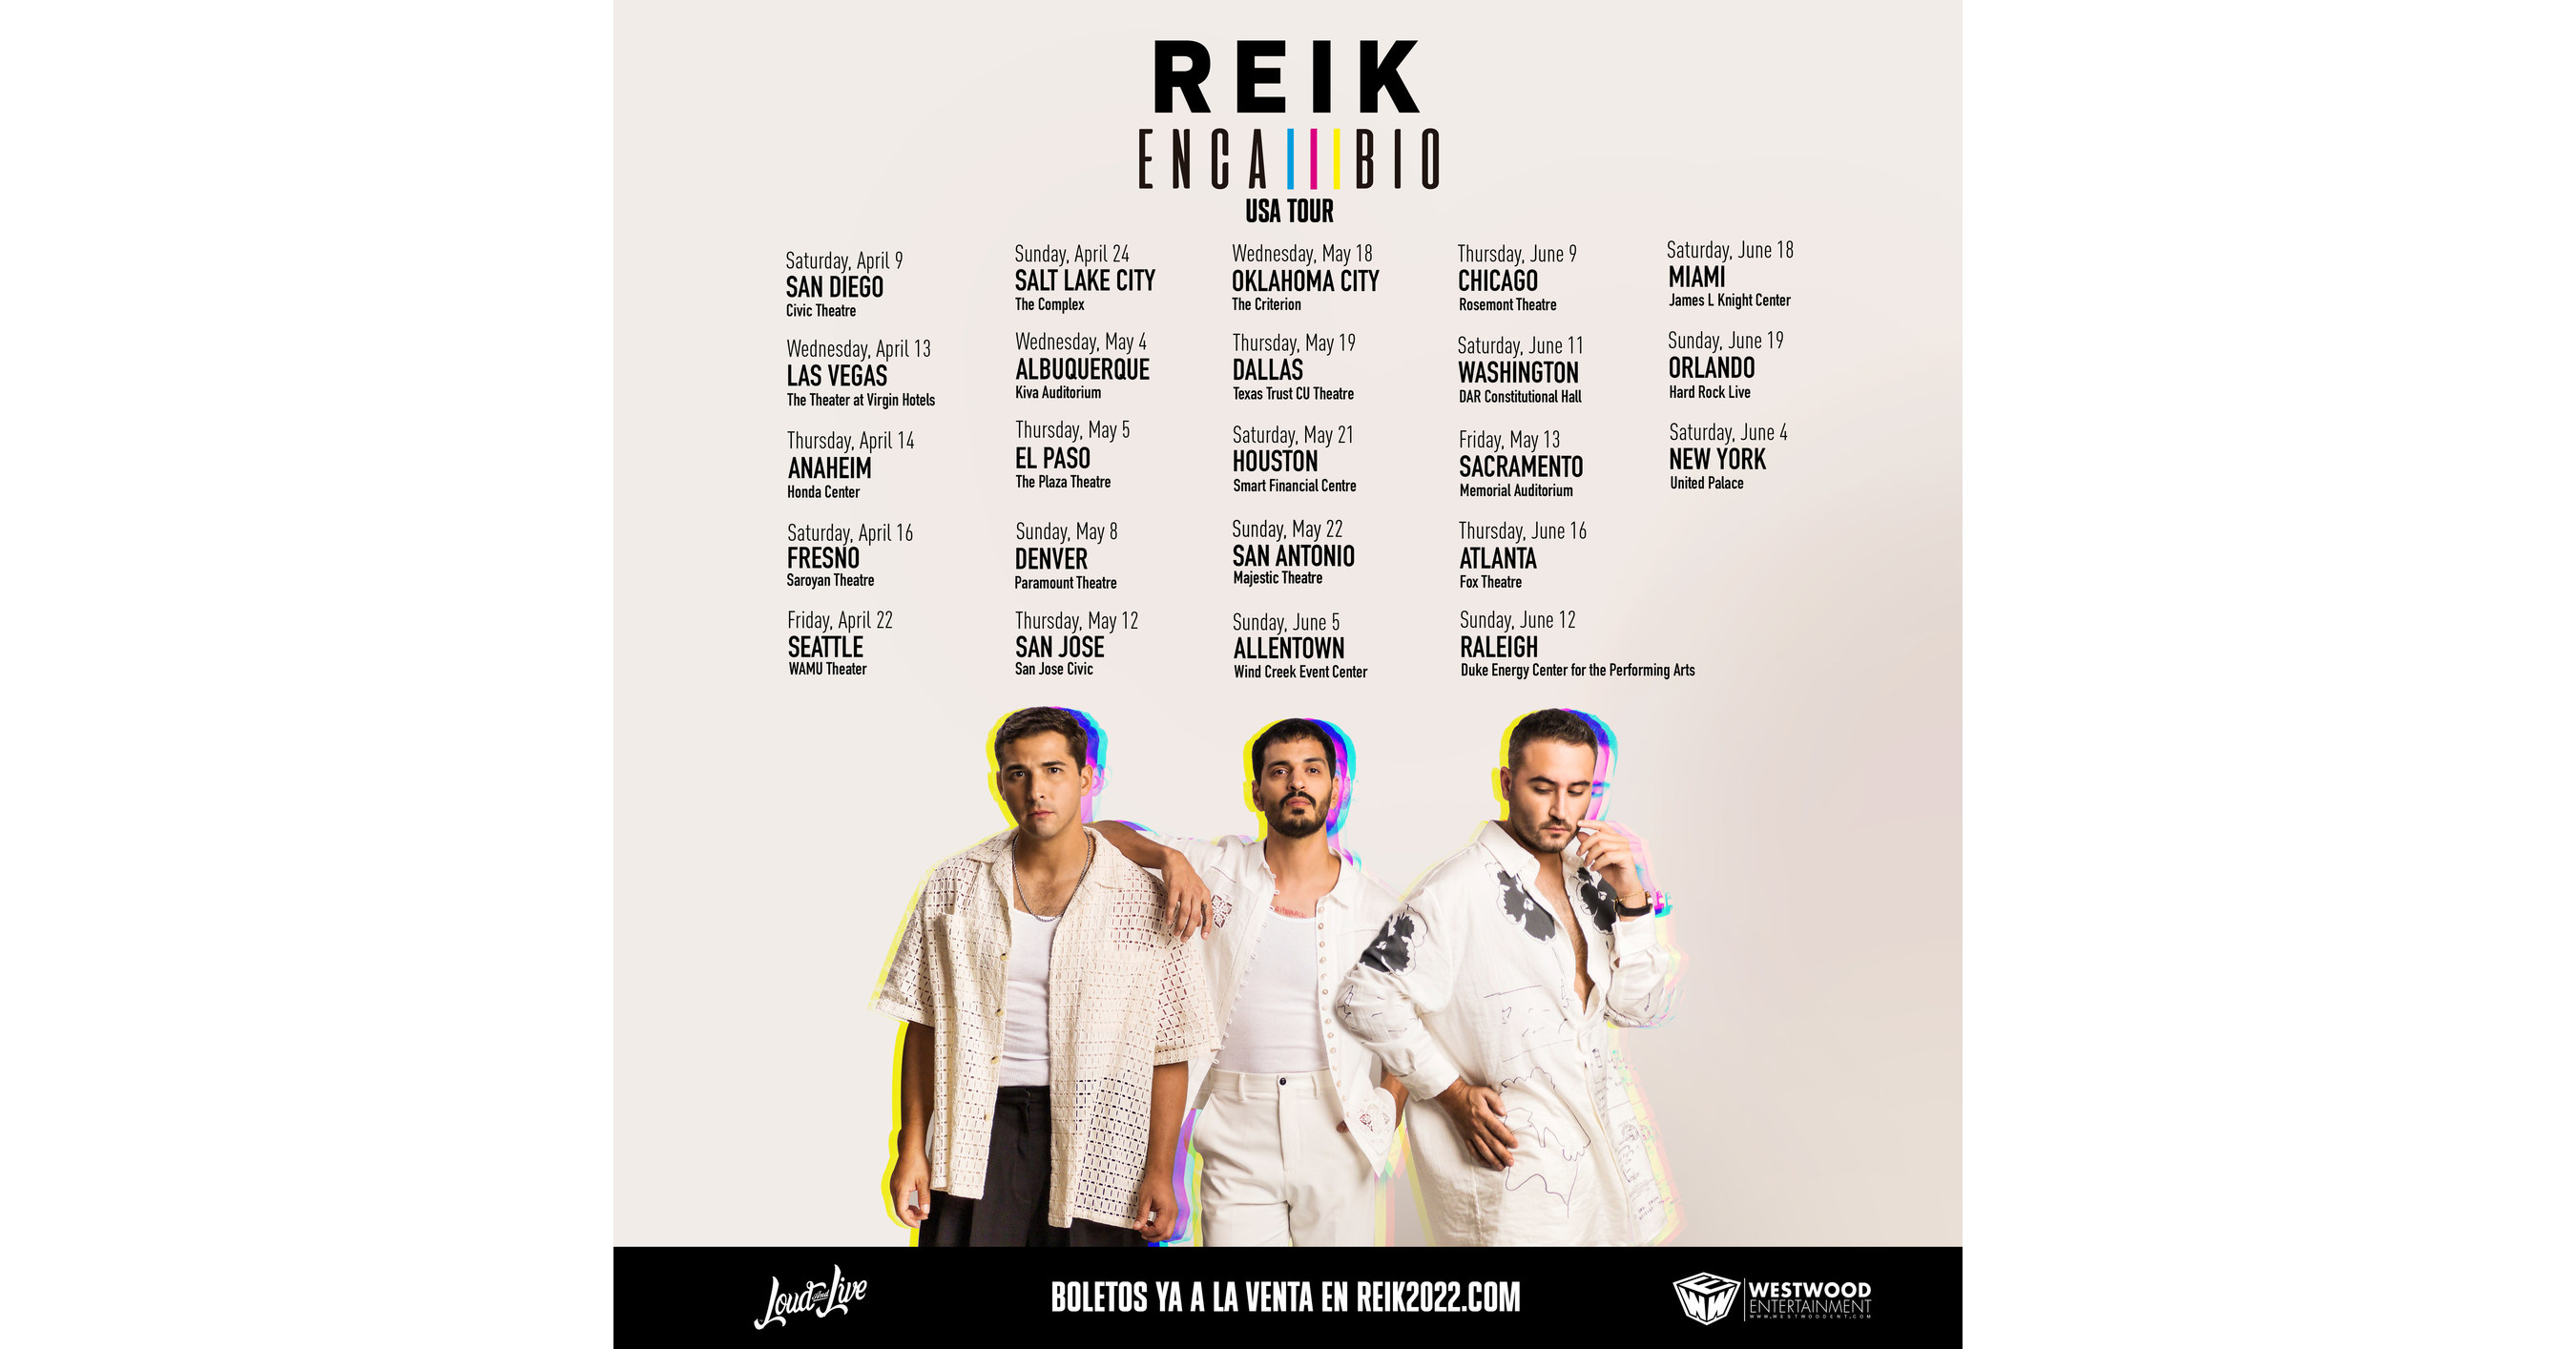 REIK ANUNCIA SU GIRA "EN CAMBIO USA TOUR"